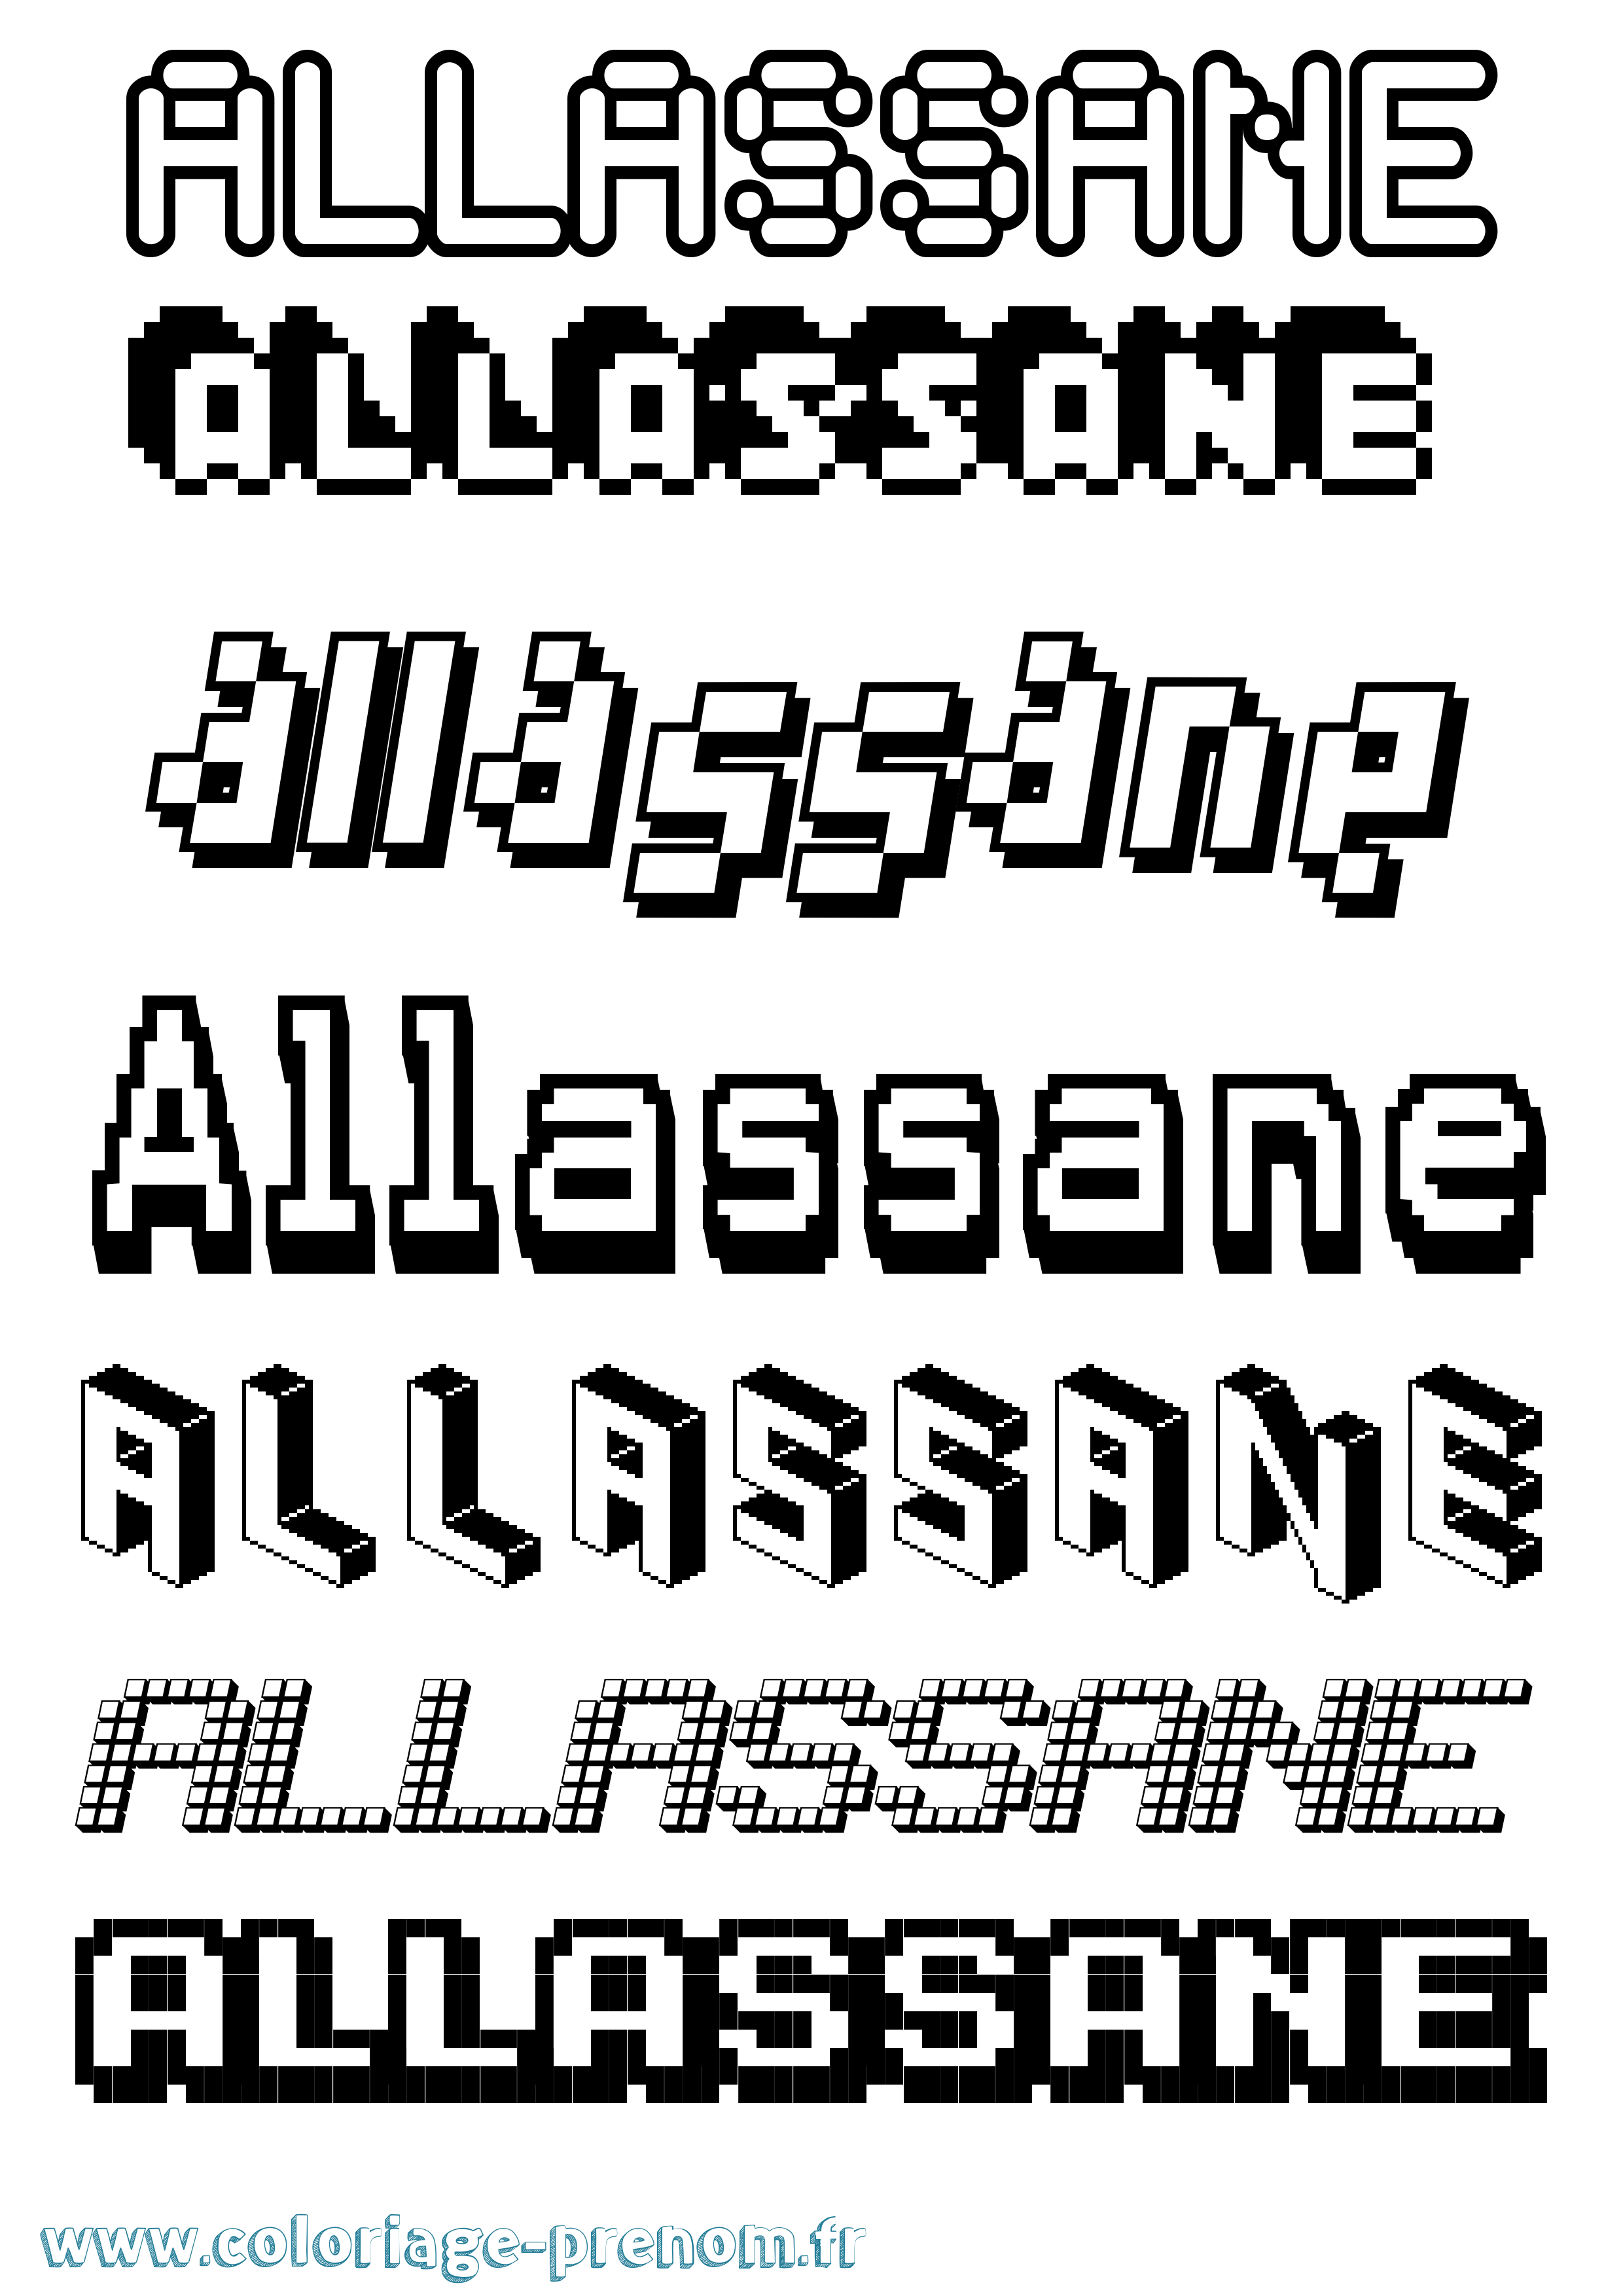 Coloriage prénom Allassane Pixel